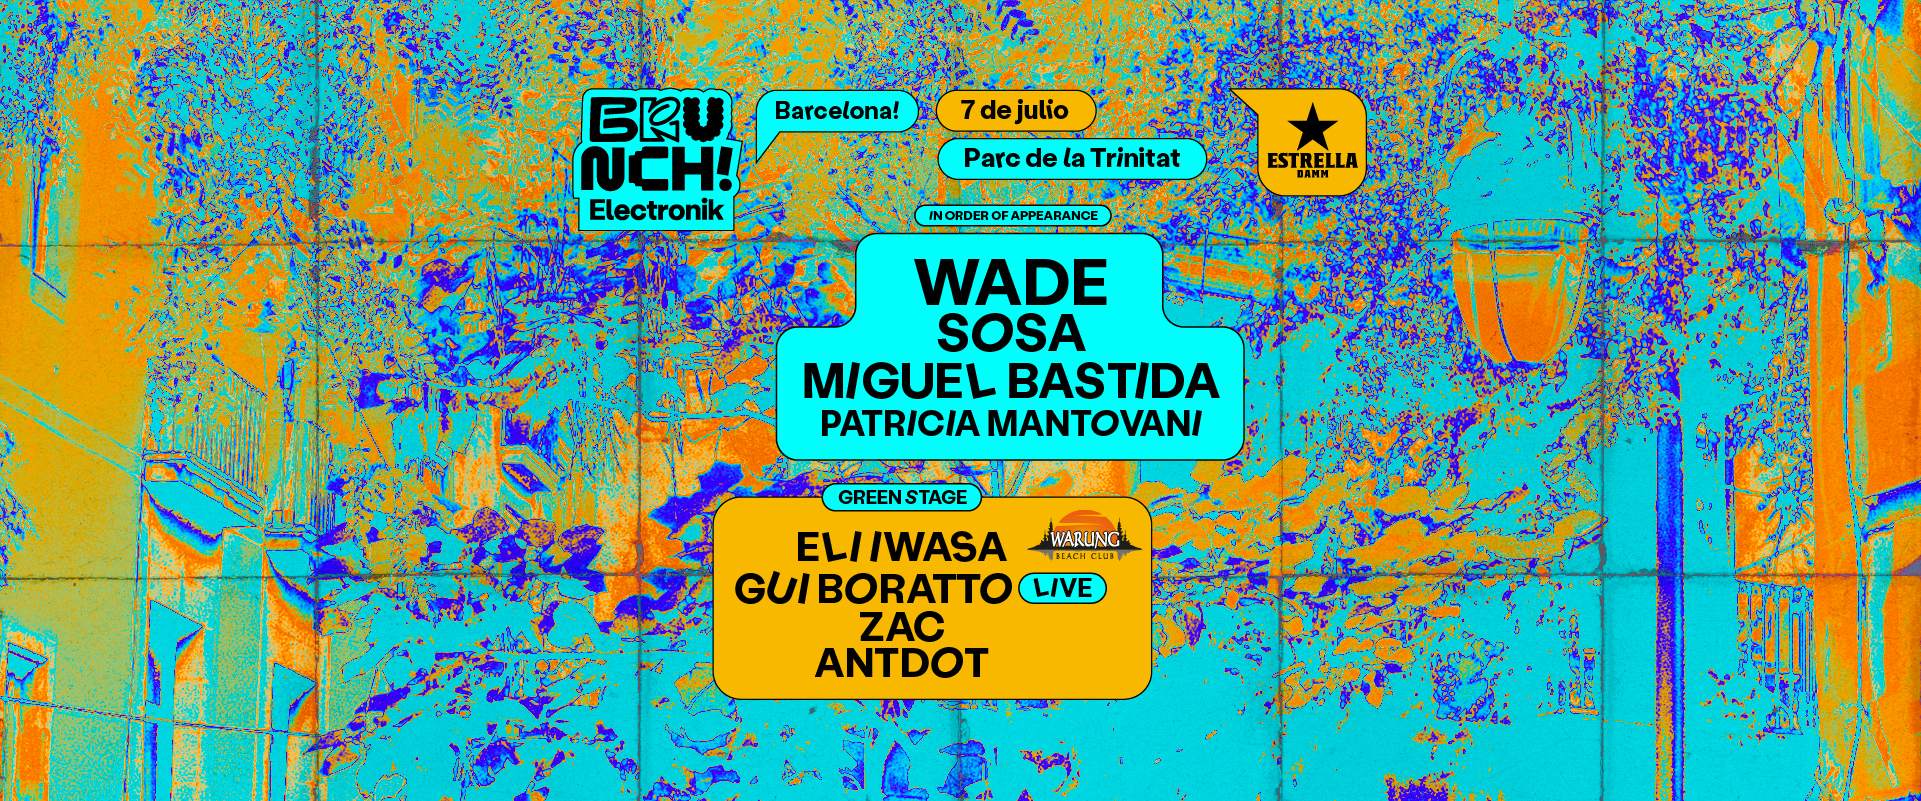 Brunch Electronik Barcelona #10 Wade, Sosa, Miguel Bastida, Patricia Mantovani y más - フライヤー表